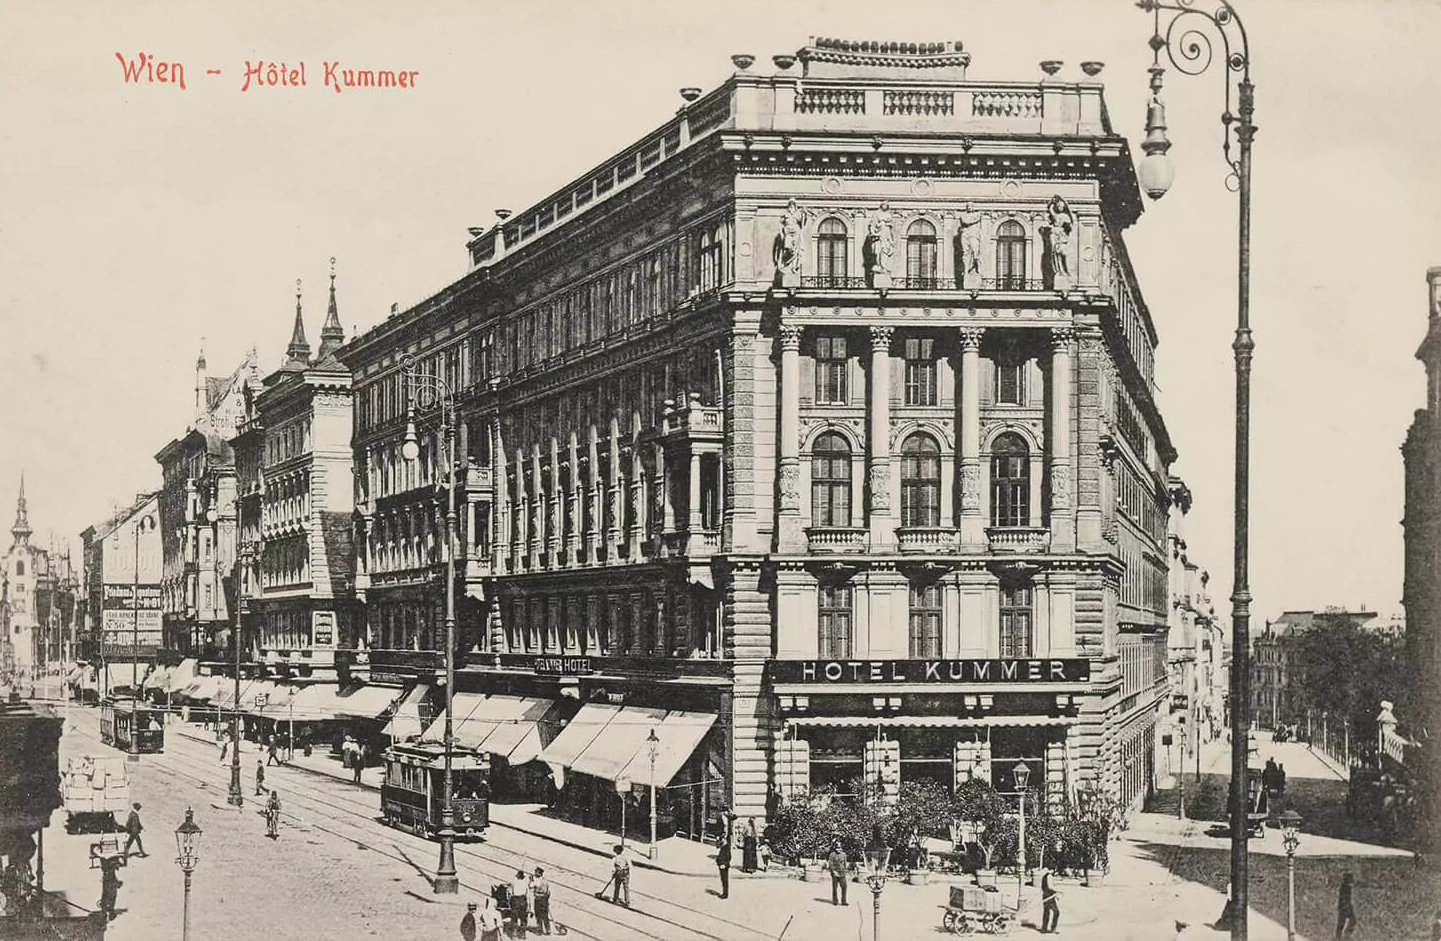 Das Hotel Kummer auf der Mariahilfer Straße: Hier übernachtete Arthur Conan Doyle nur einmal, weil es ihm zu teuer war. Ansichtskarte, um 1906, Wien Museum, Inv.-Nr. 58891/755 